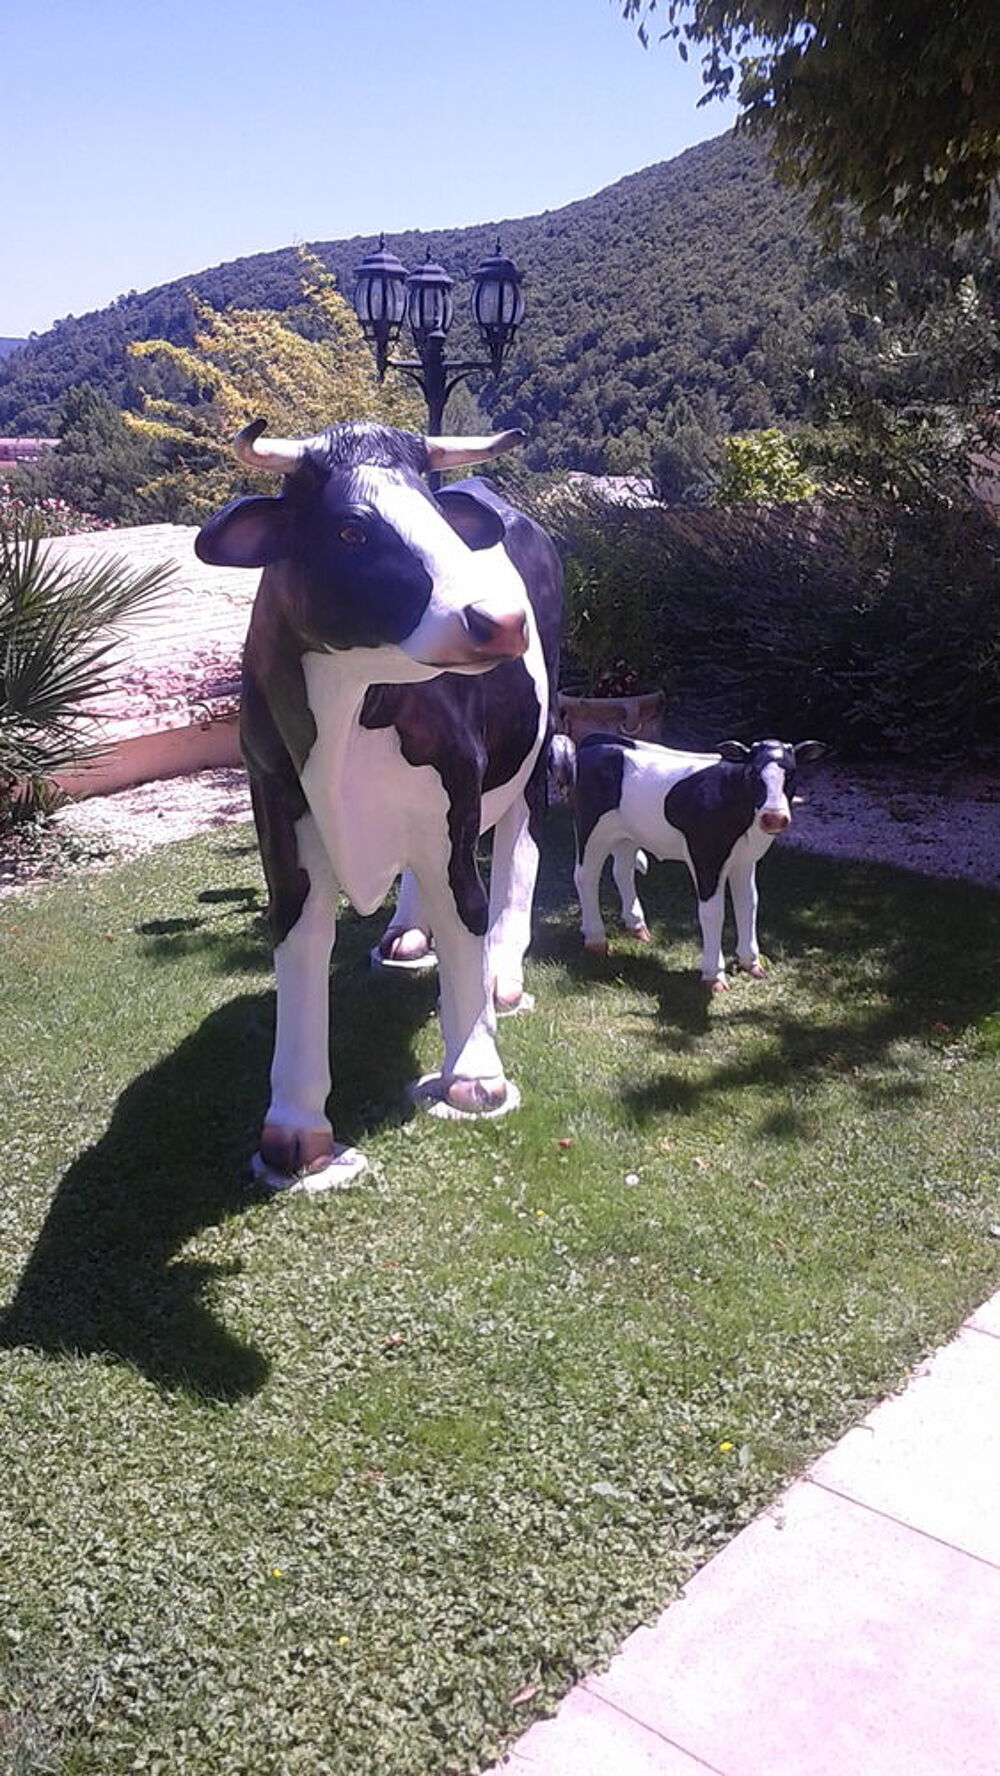 vaches et son veau Jardin